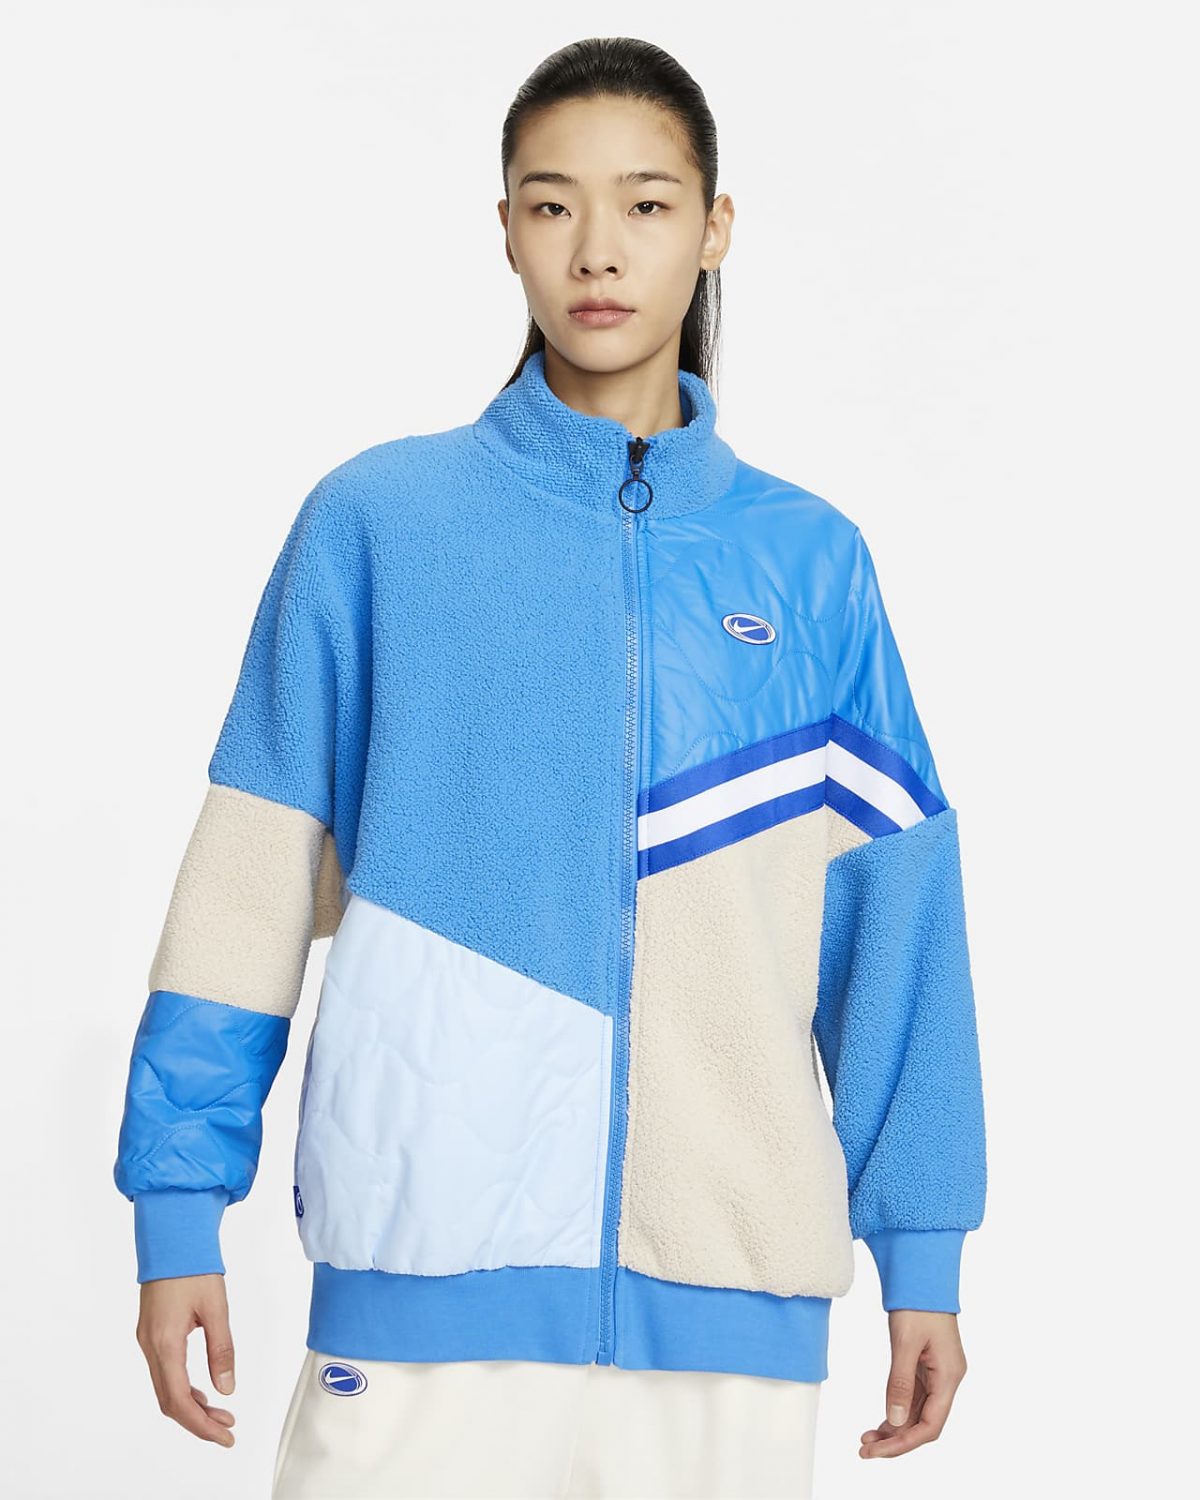 Женская куртка Nike Sportswear синяя фото